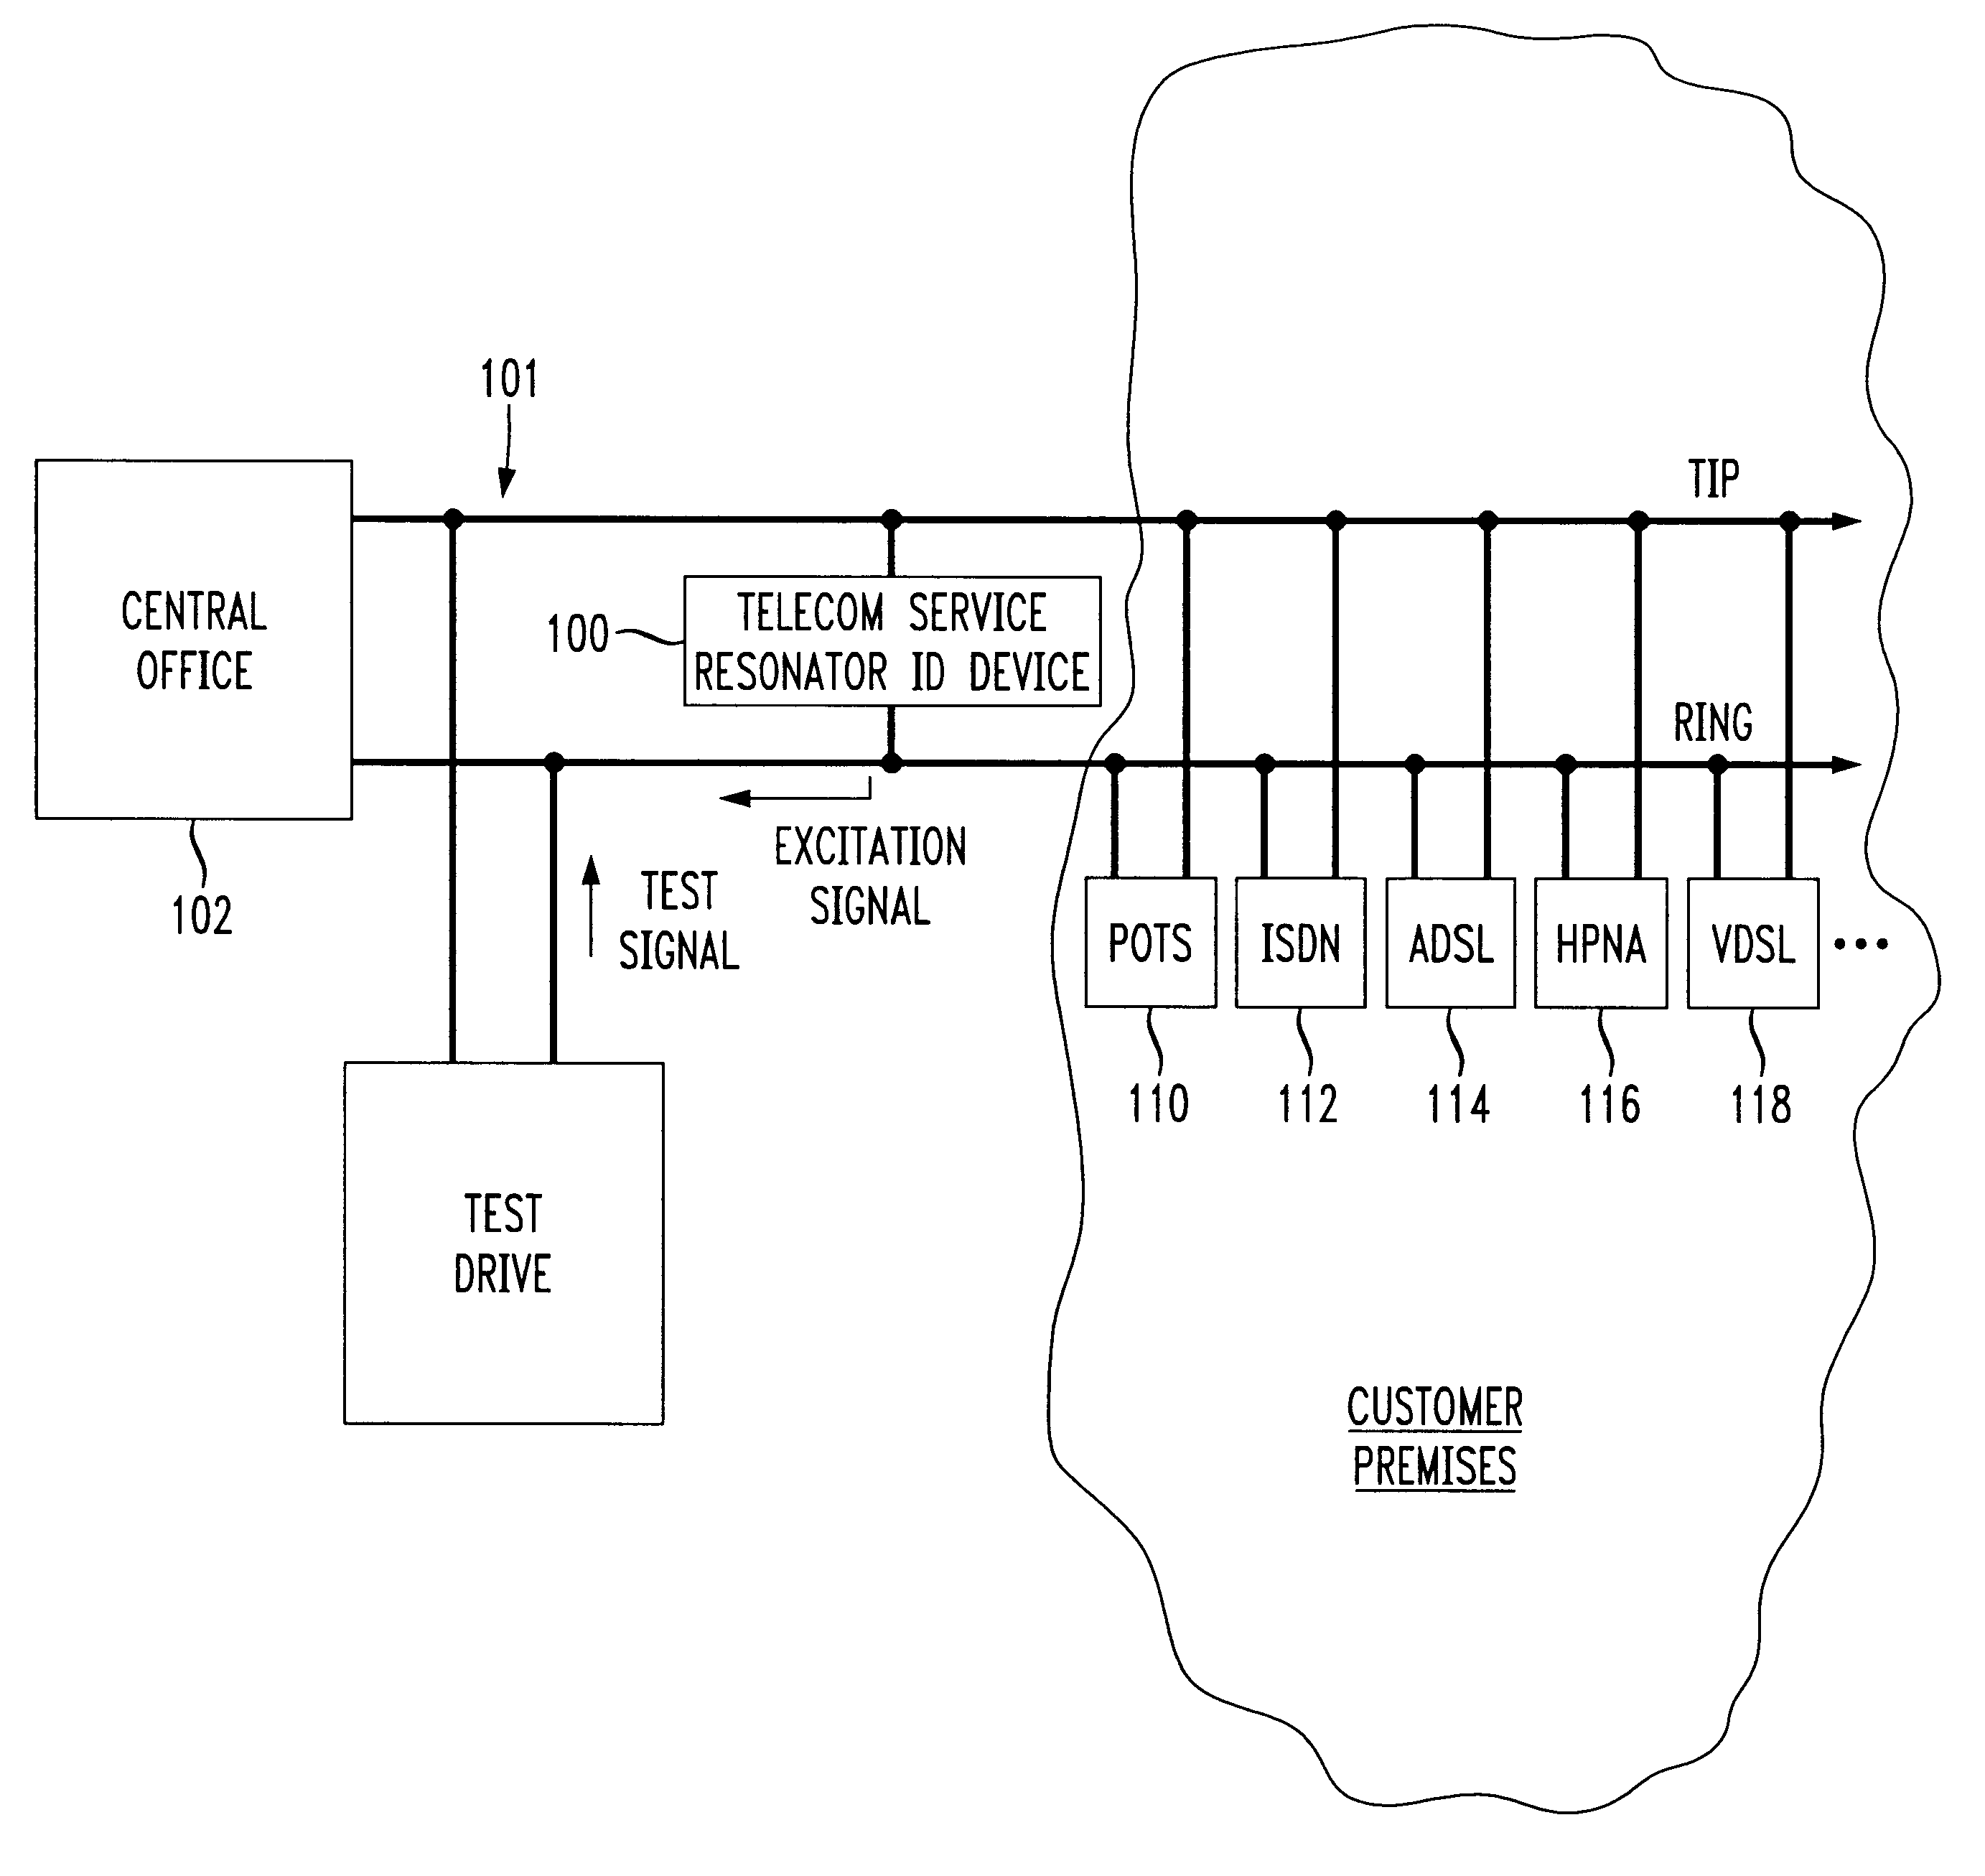 Telecom service identification resonator apparatus and technique